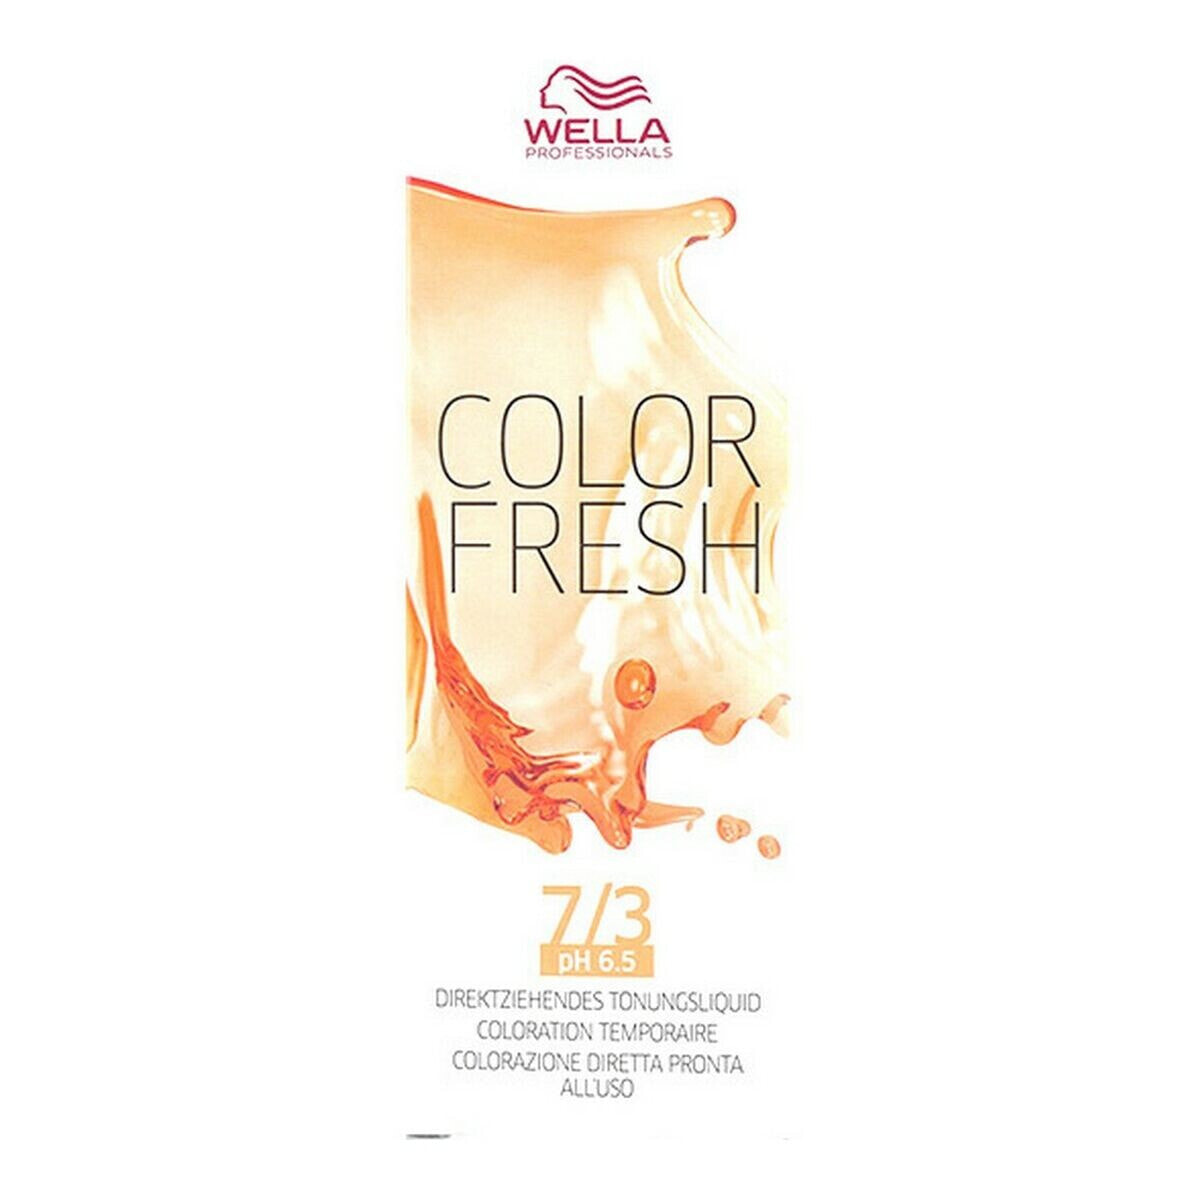 Краска полуперманентная Color Fresh Wella 4015600185732 Nº 7/3 (75 ml)